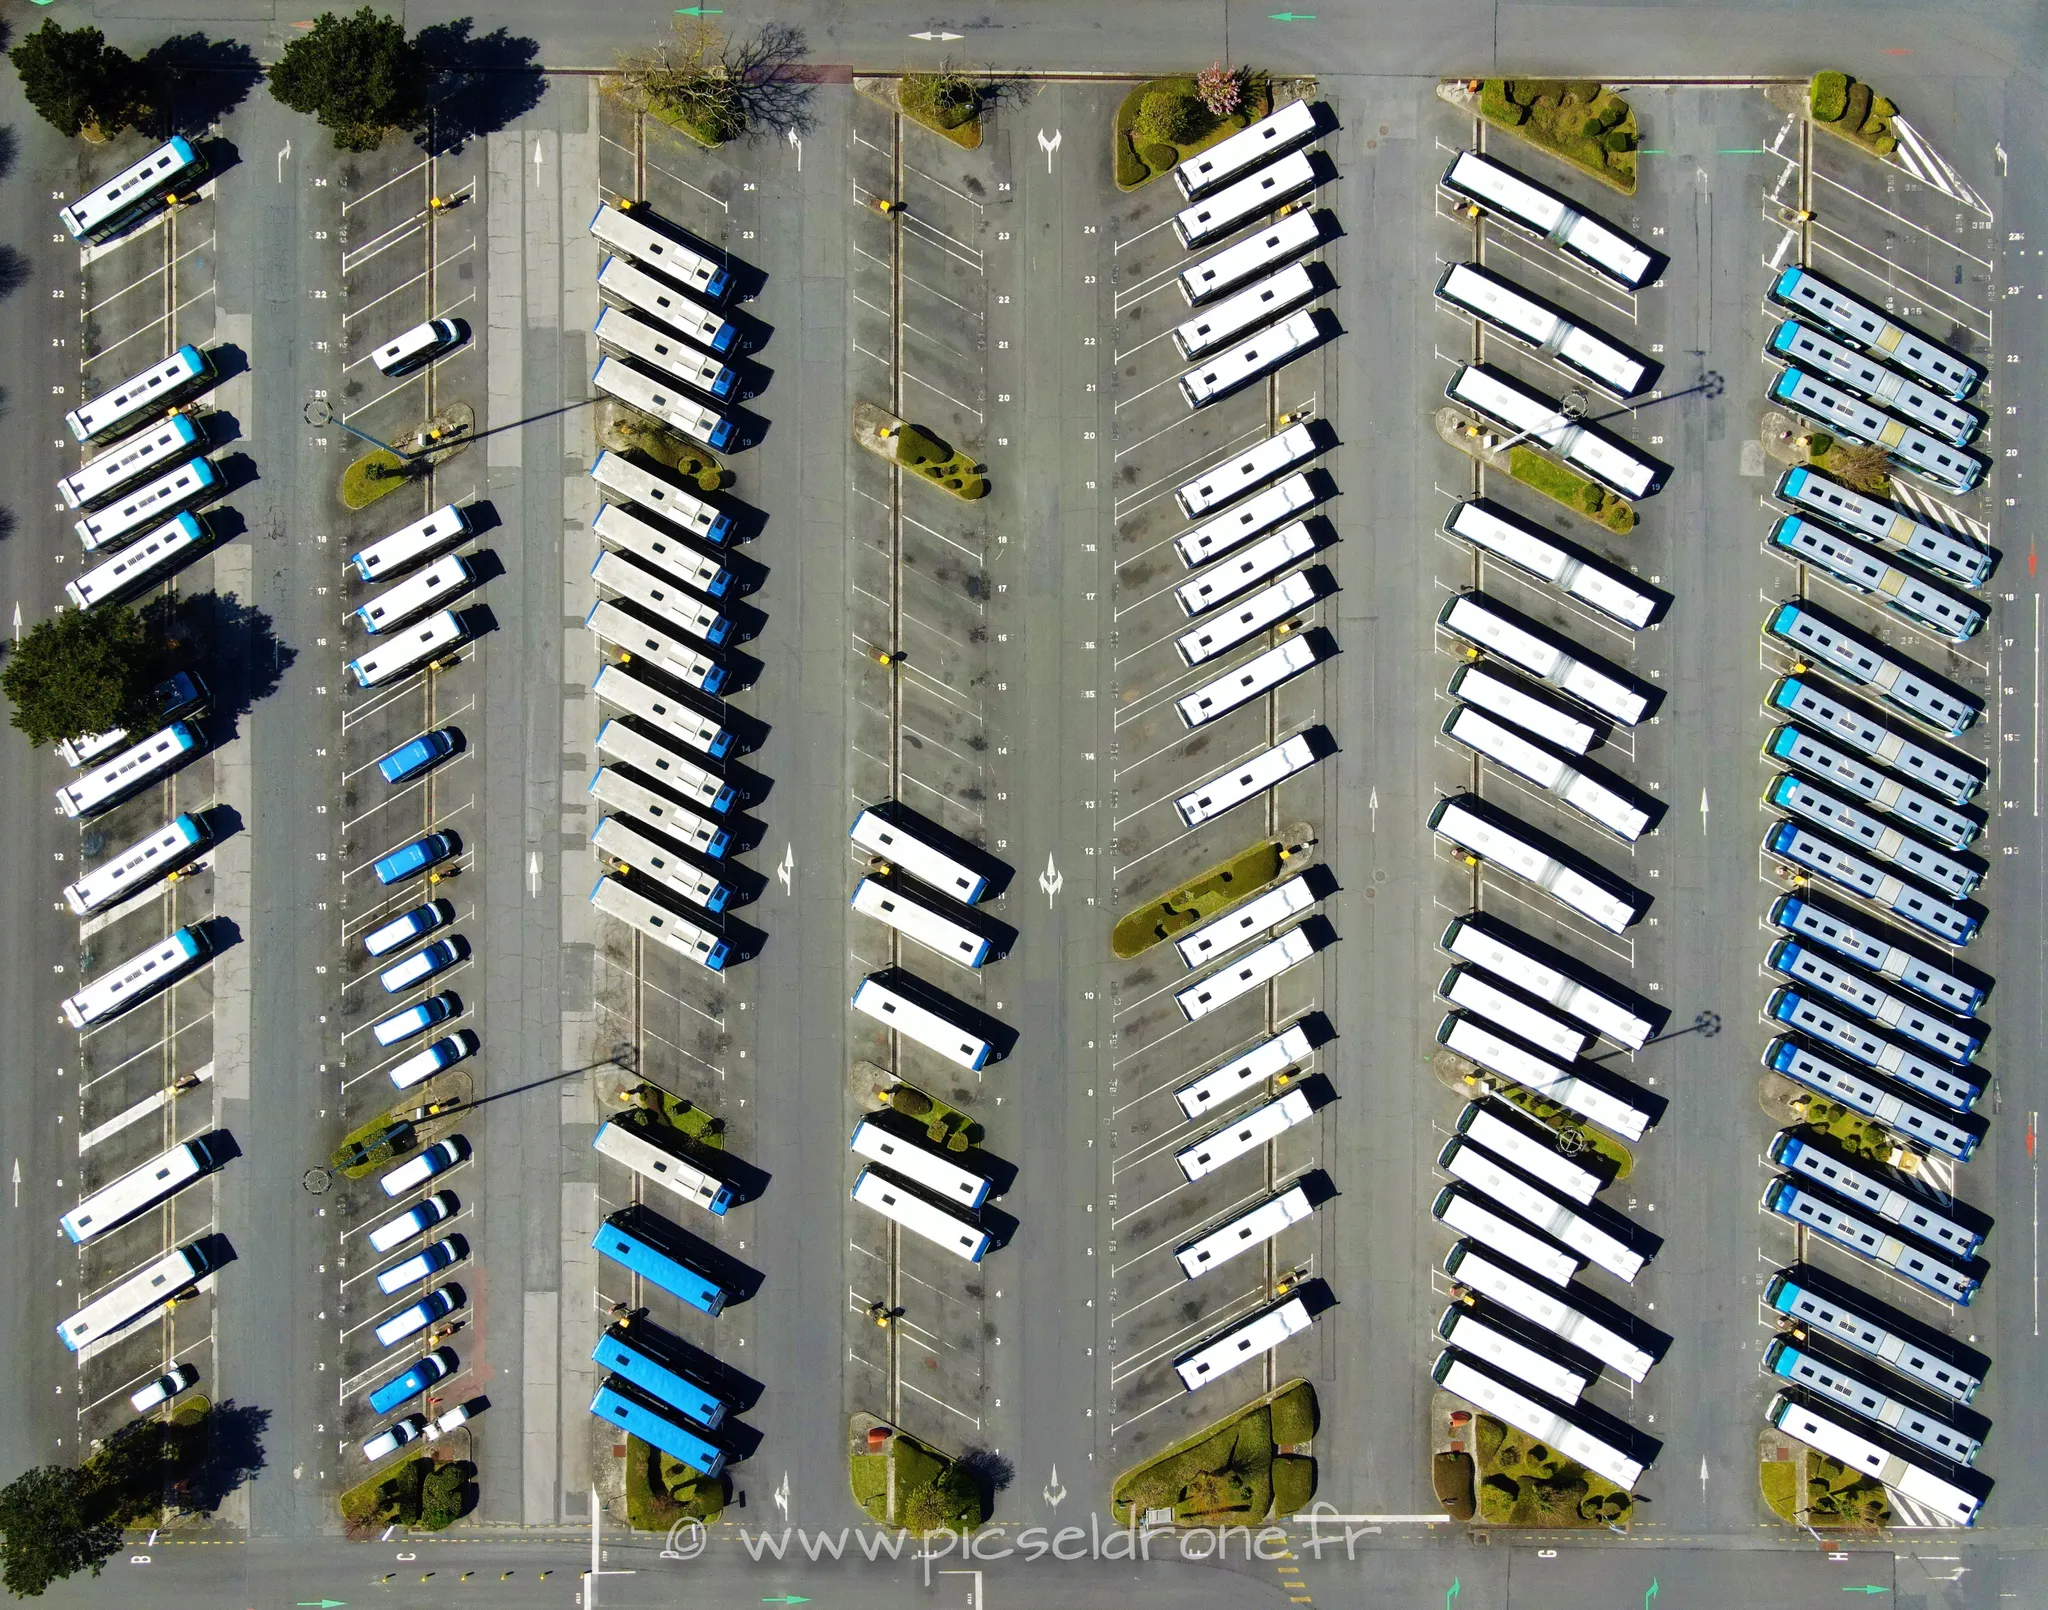 Prise de vue aérienne, photo aérienne, dépôt bus TWISTO, télépilote drone, pilote drone, PICSEL DRONE, CAEN